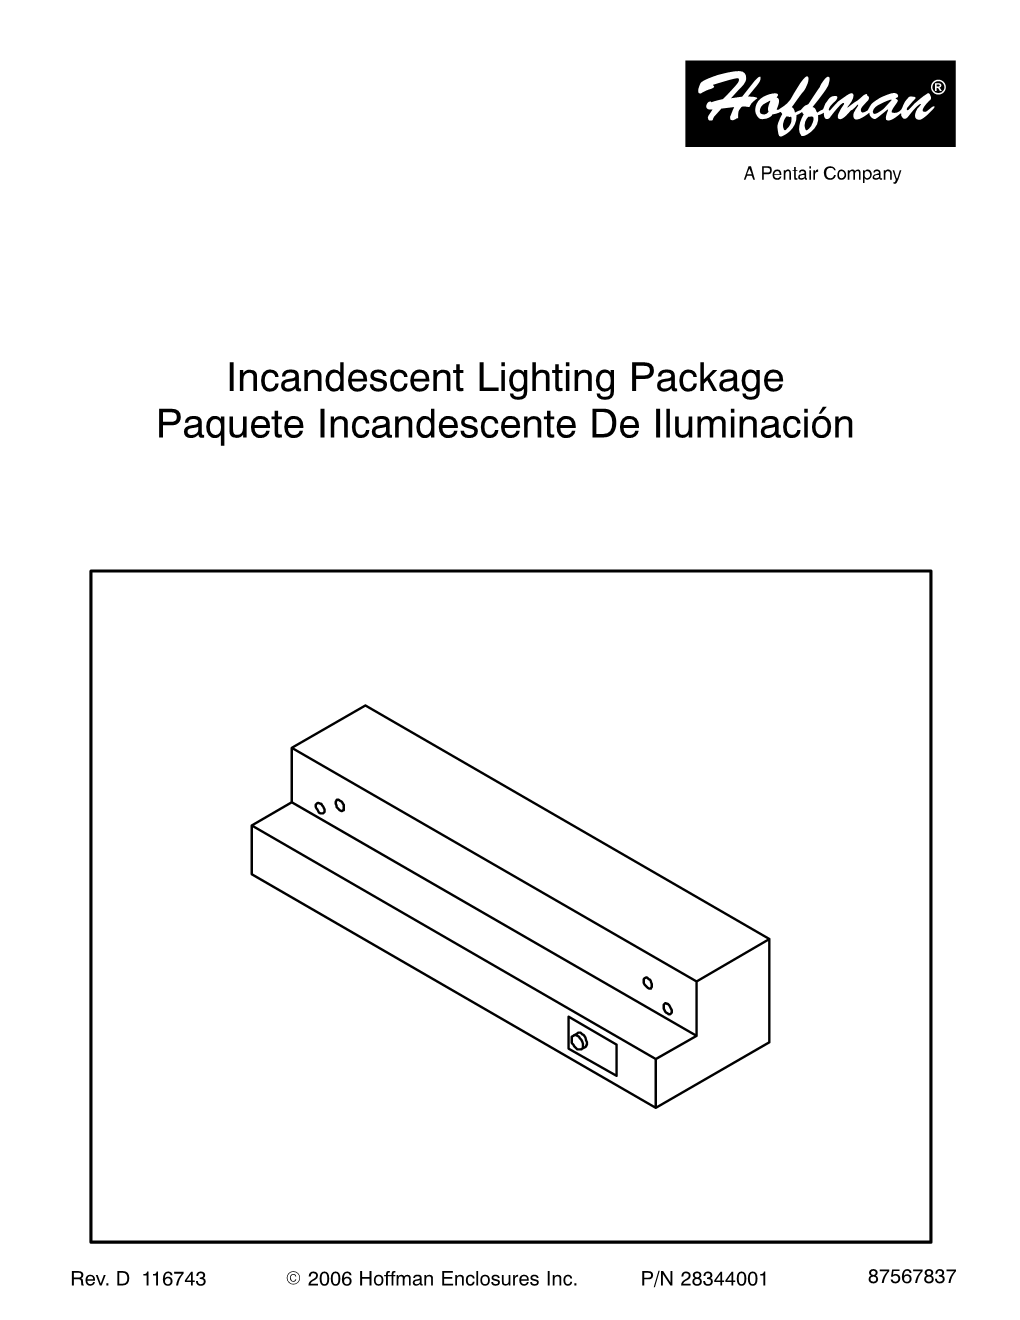 Incandescent Lighting Package Paquete Incandescente De Iluminación